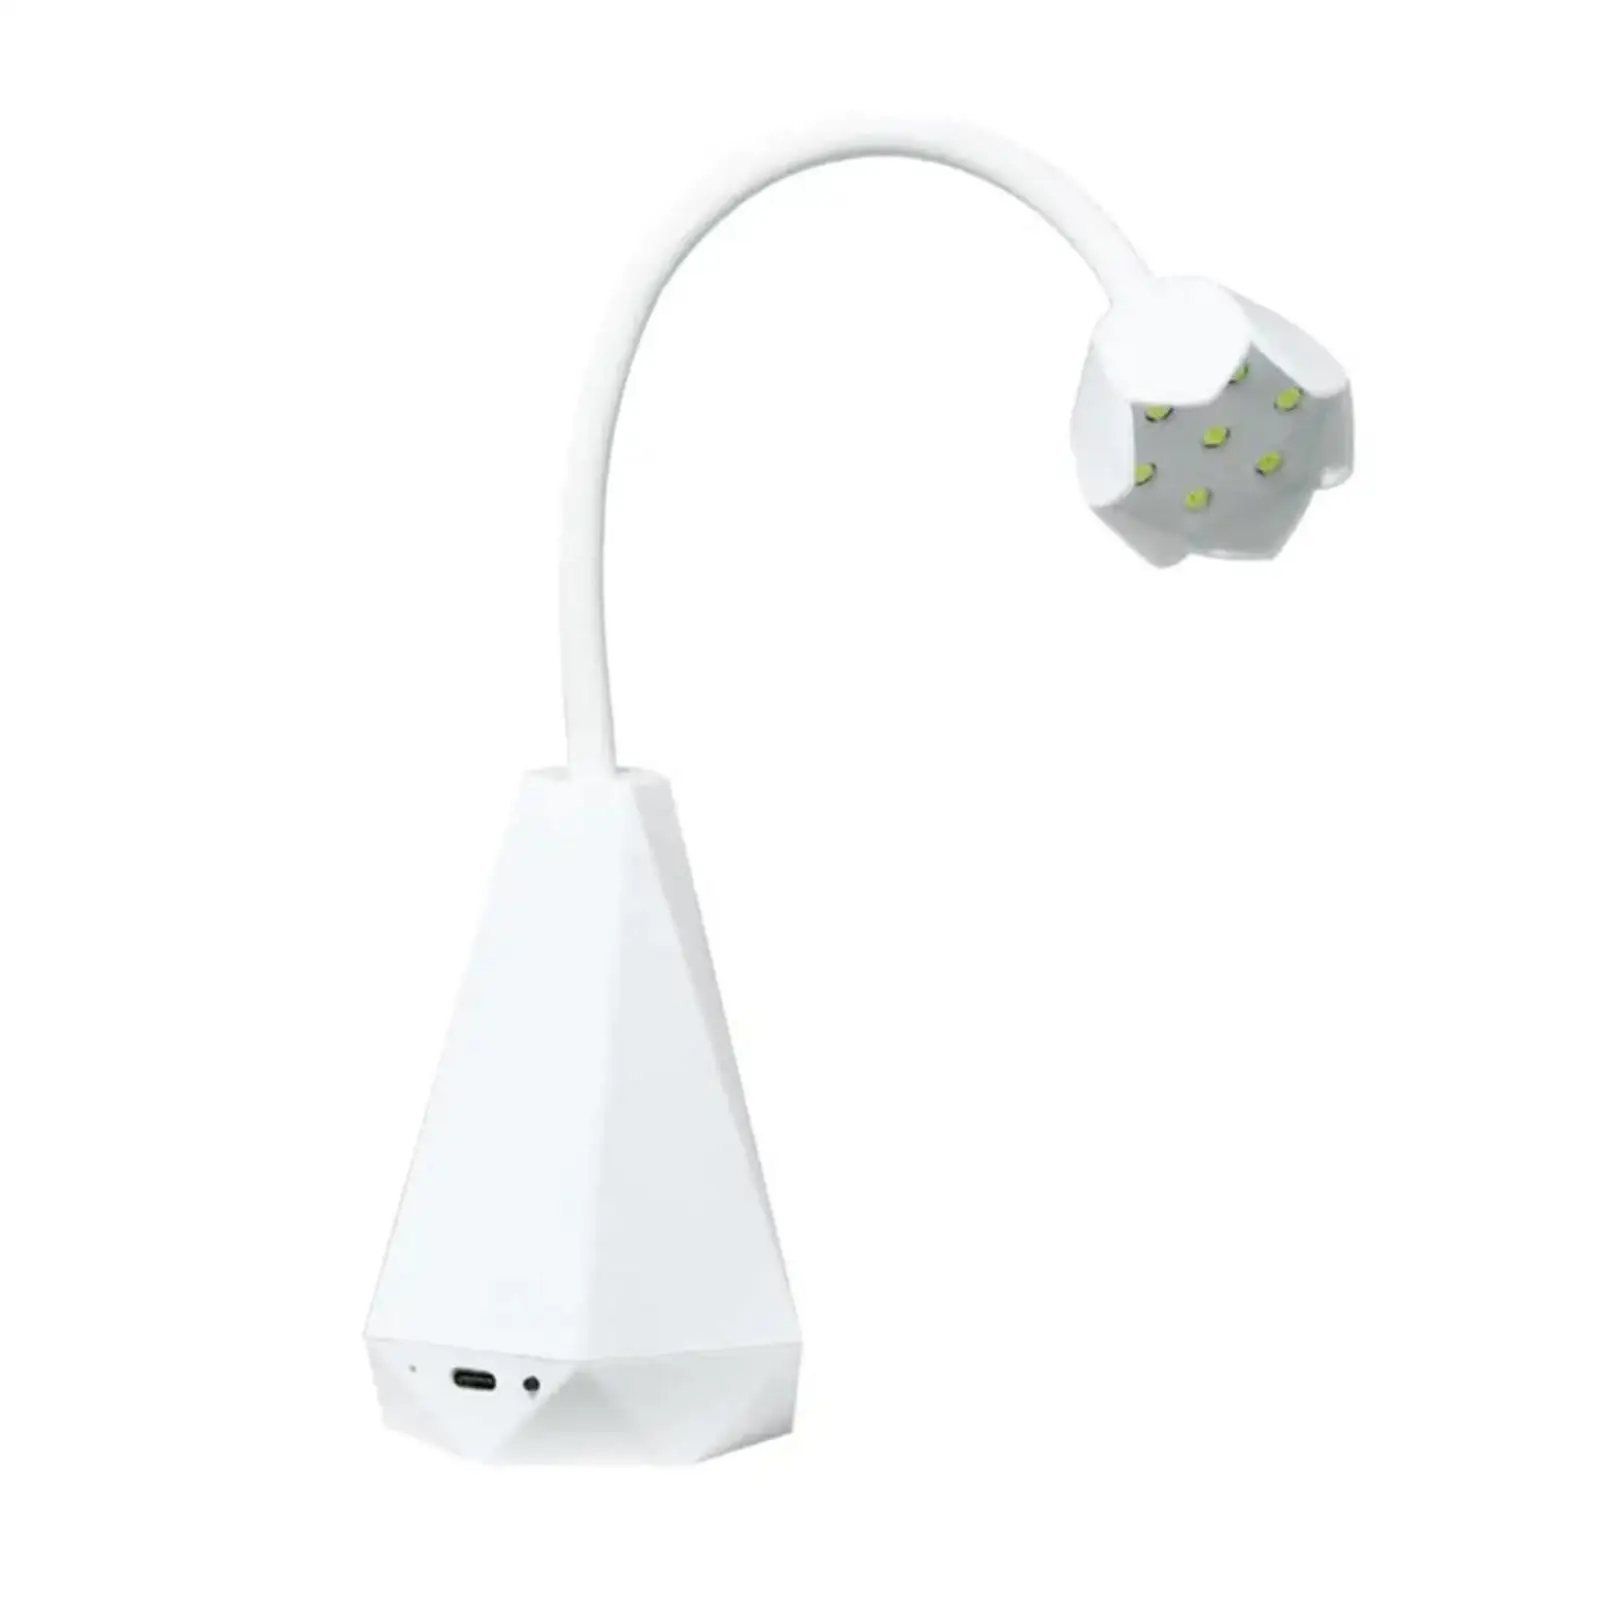 Portable Mini LED Nail Drying Lamp Nail Polish Curing Lamp for Nail Art